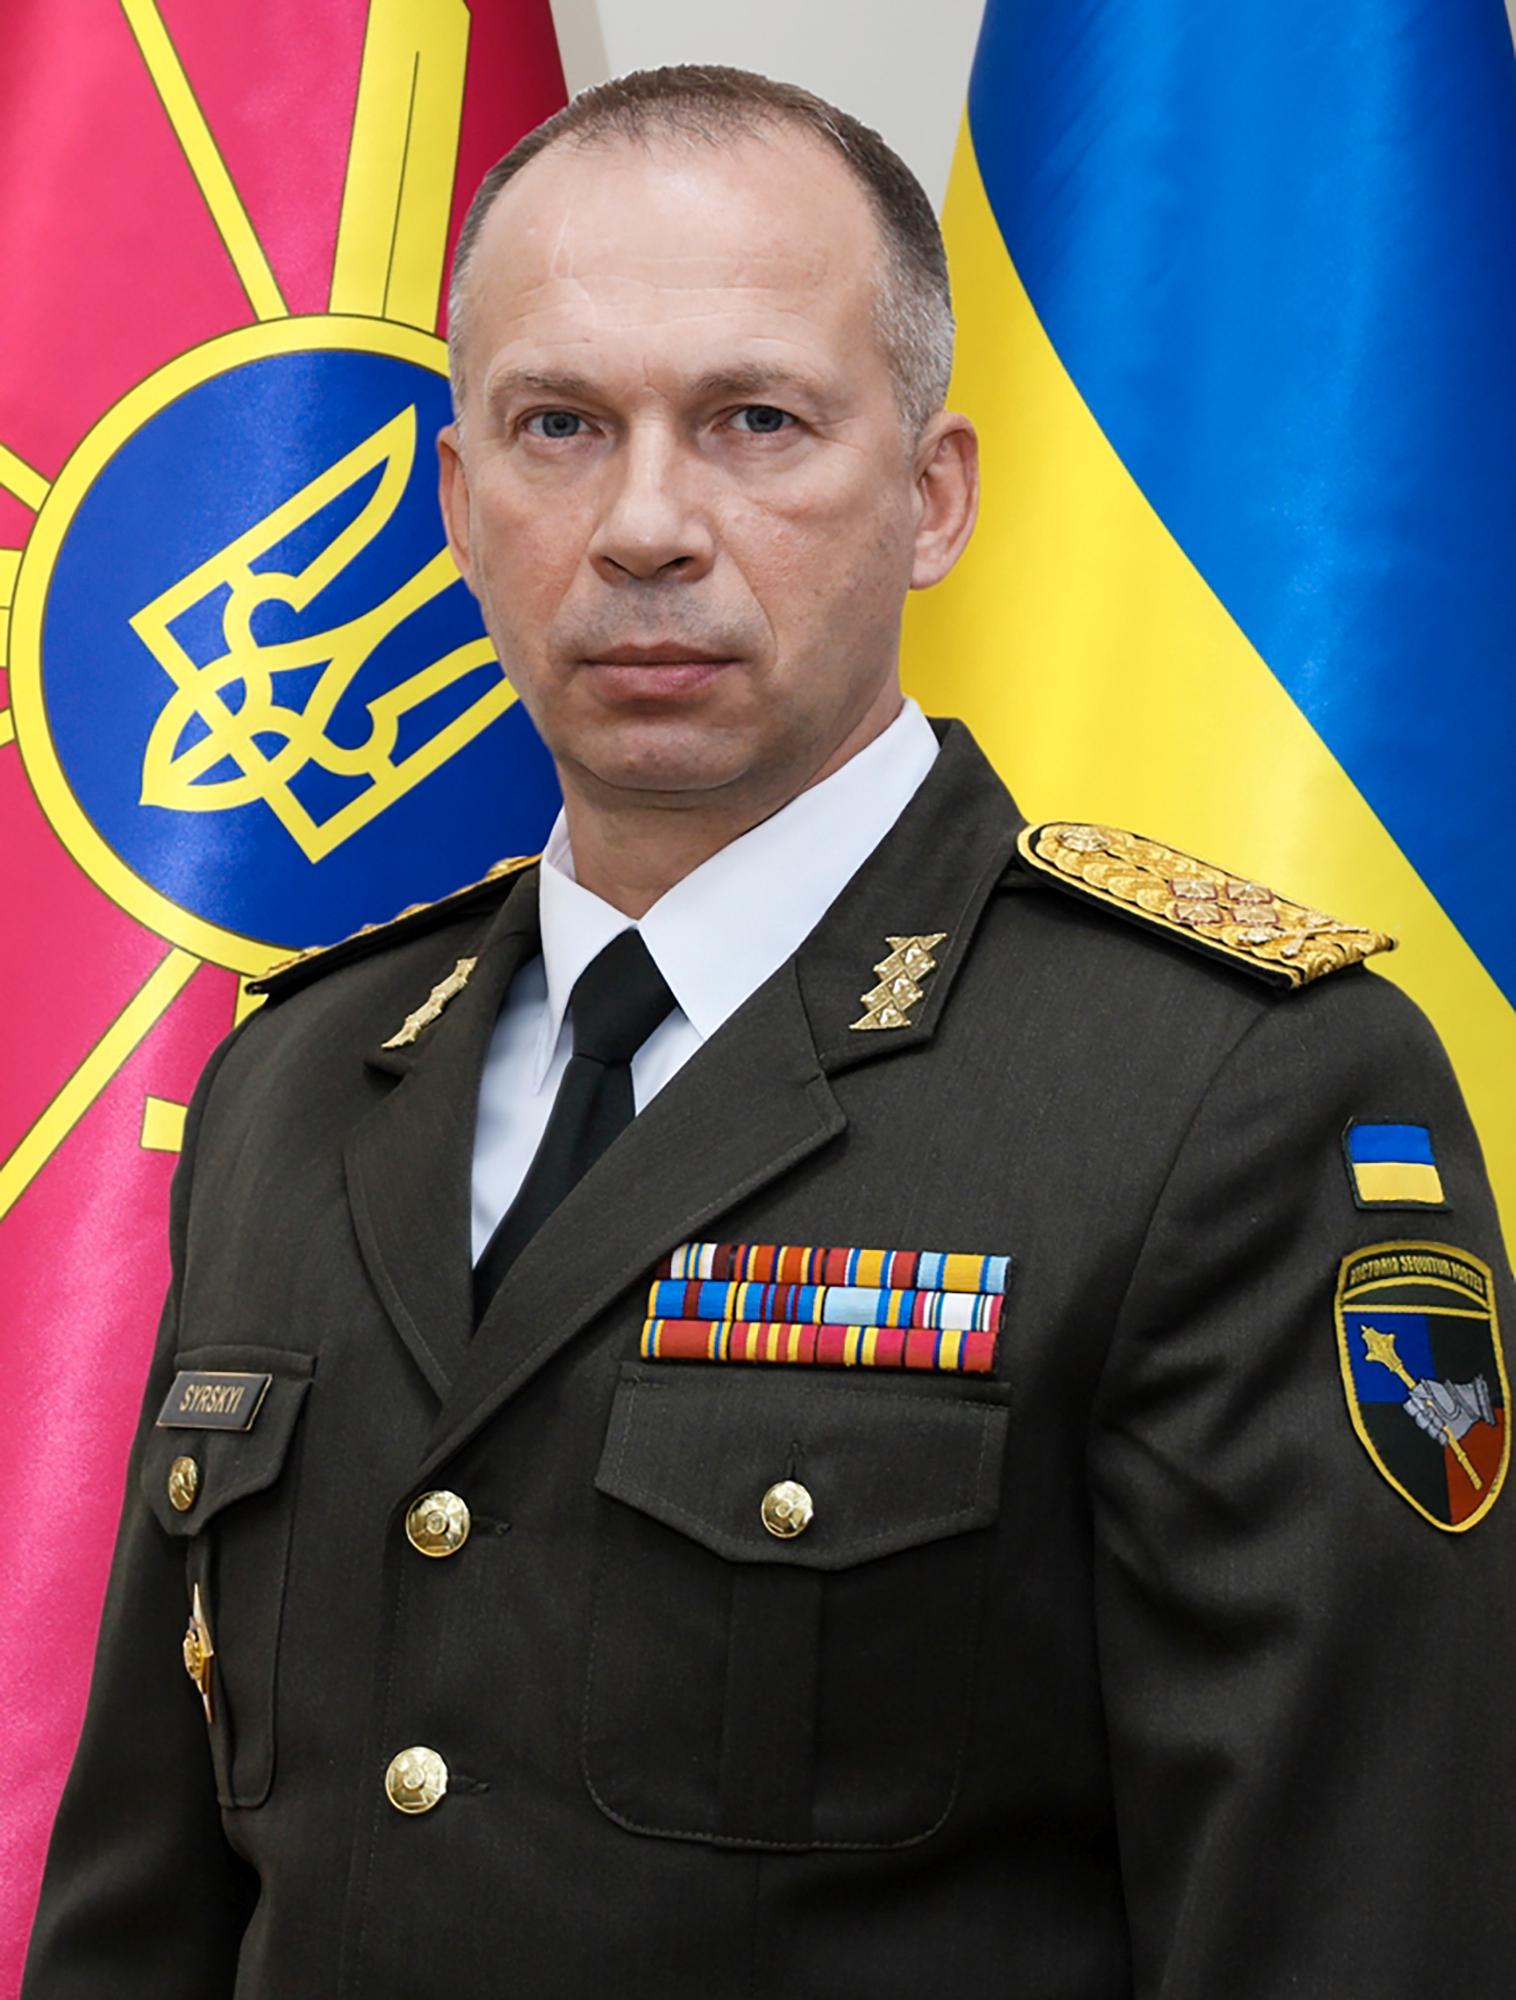 Ukrainas nya försvarschef Oleksandr Syrsky.